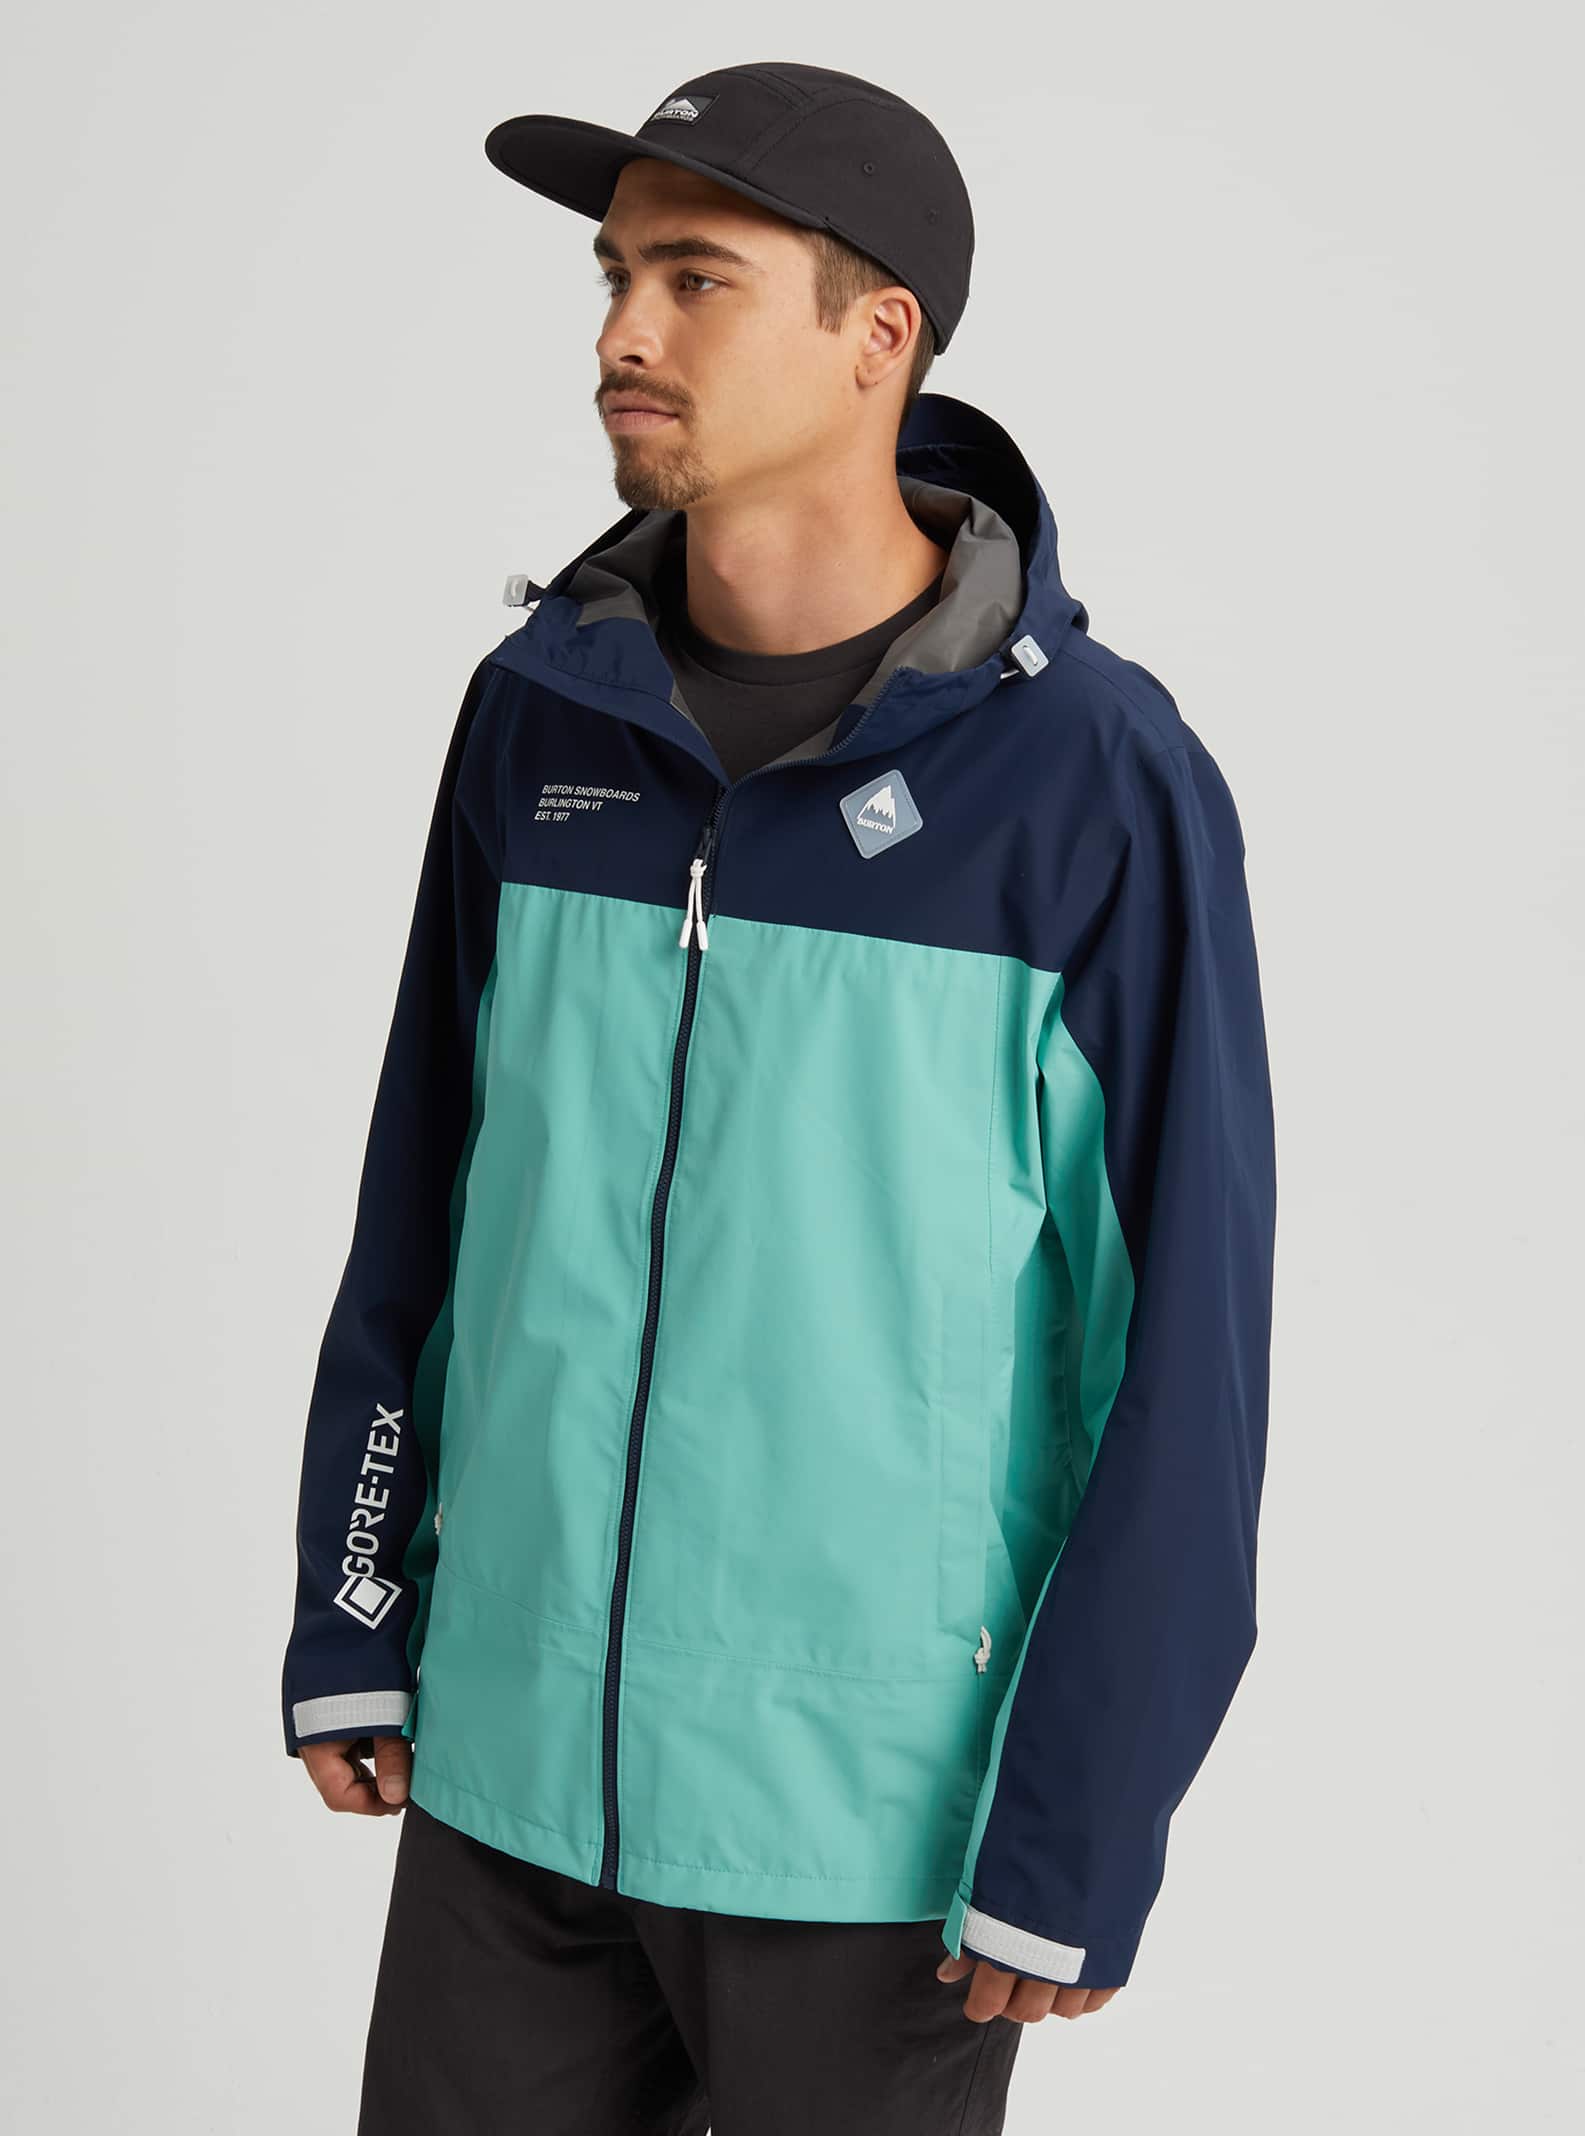 Men's Burton GORE-TEX Packrite Rain Jacket | Burton.com Spring 2020 ES